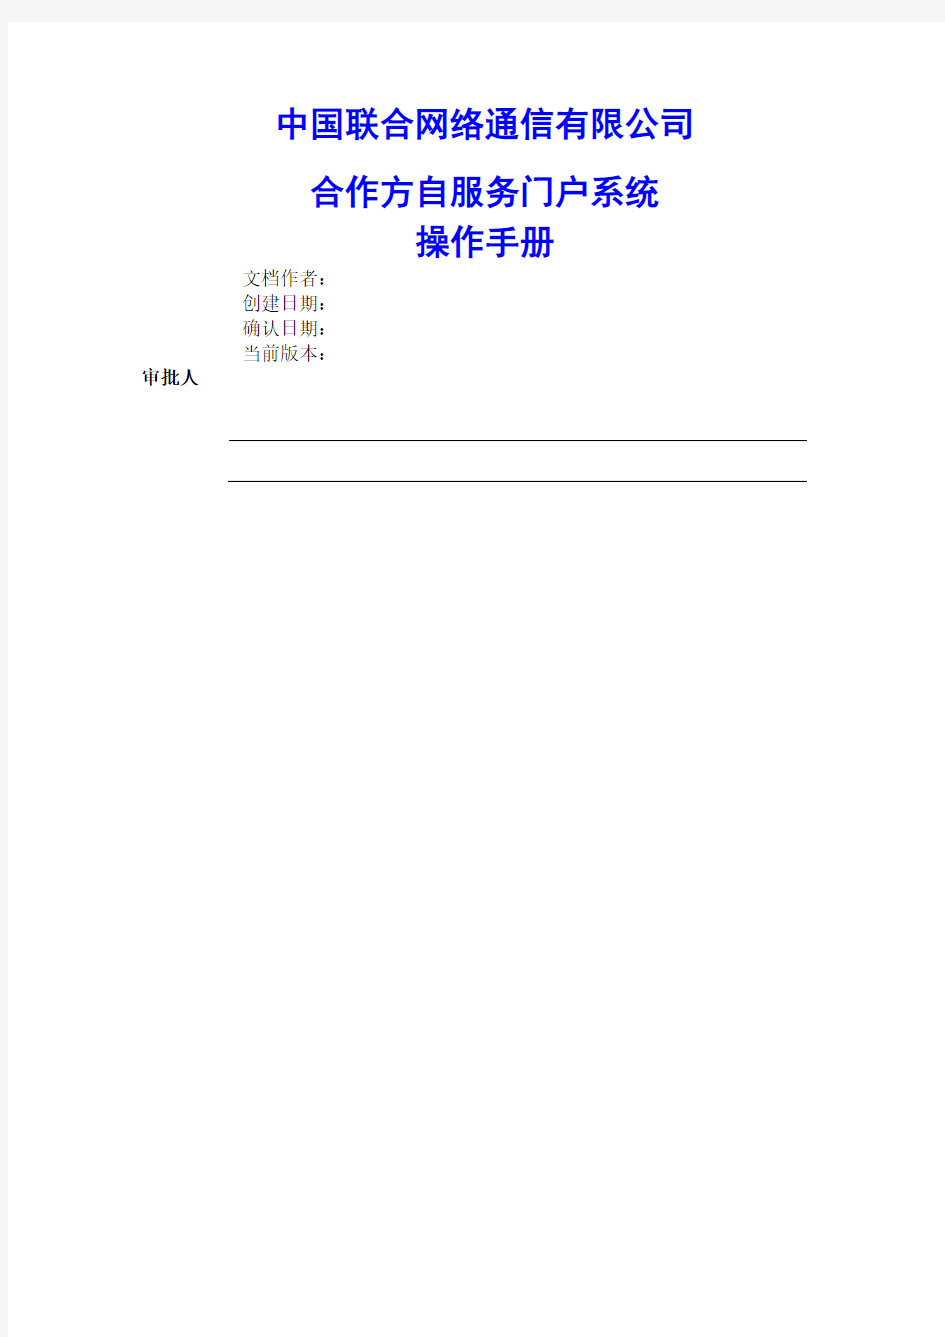 中国联通合作方自服务门户系统操作手册合作方人员操作V 